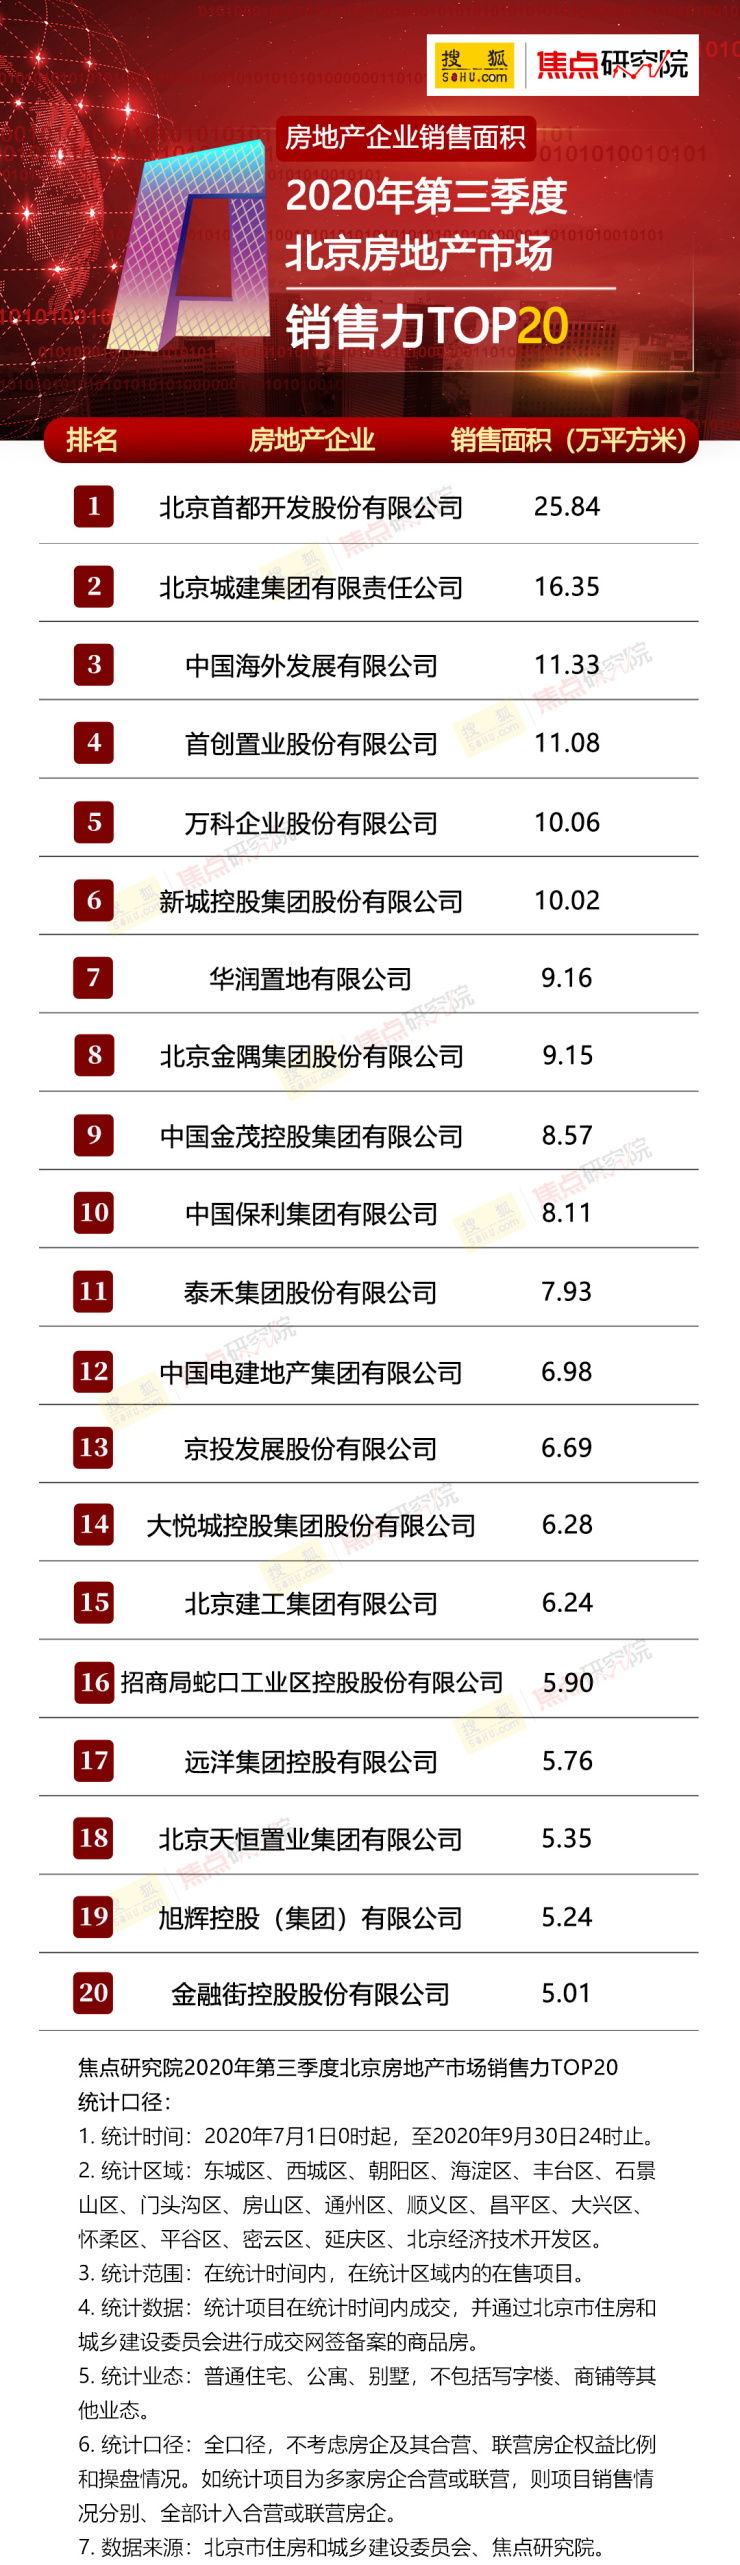 权威发布2020年第三季度北京房地产市场销售力TOP20